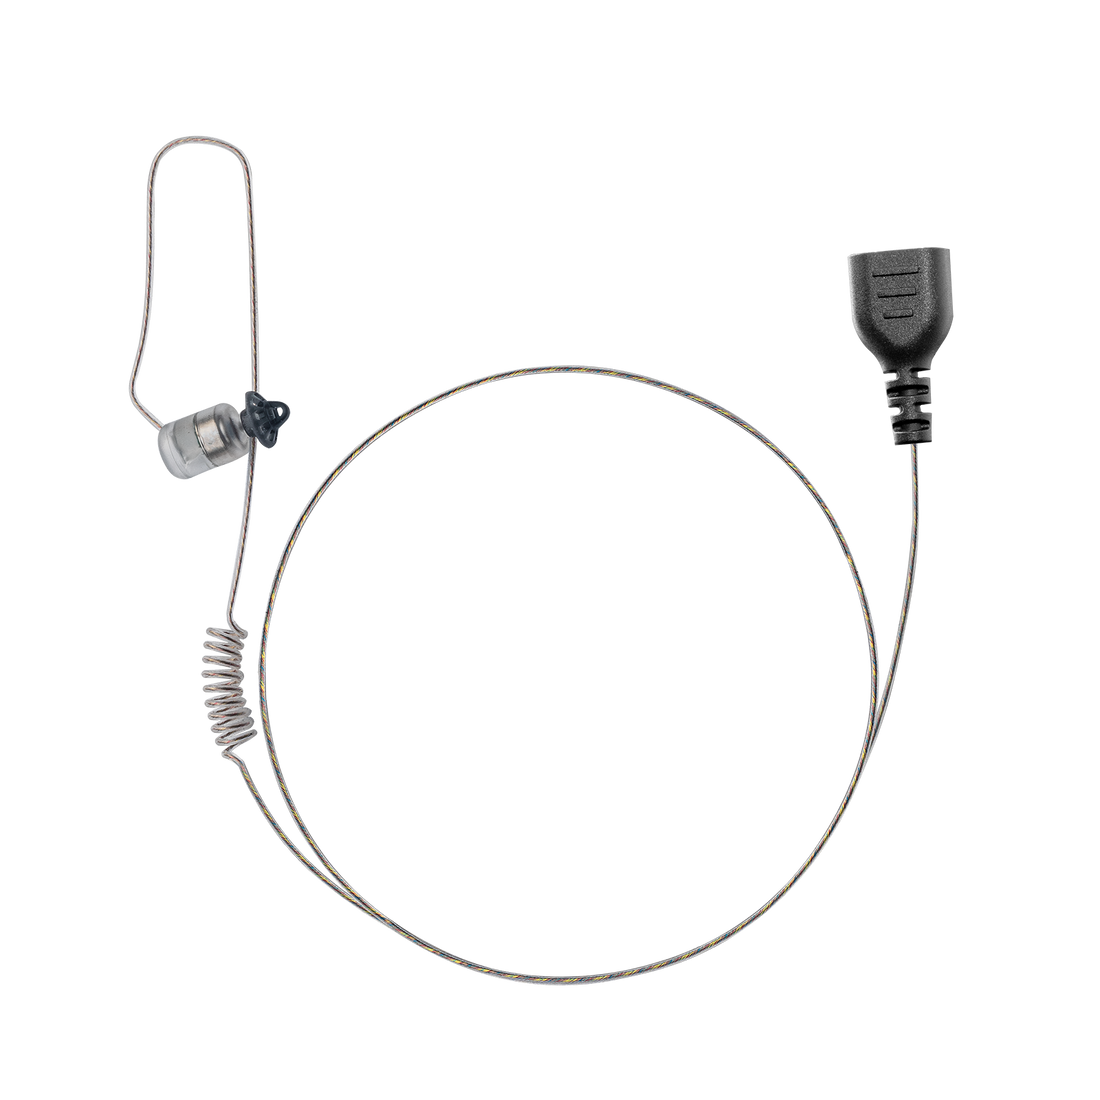 N•ear 360 Flexo Dynamic™ Snaplock Earpiece